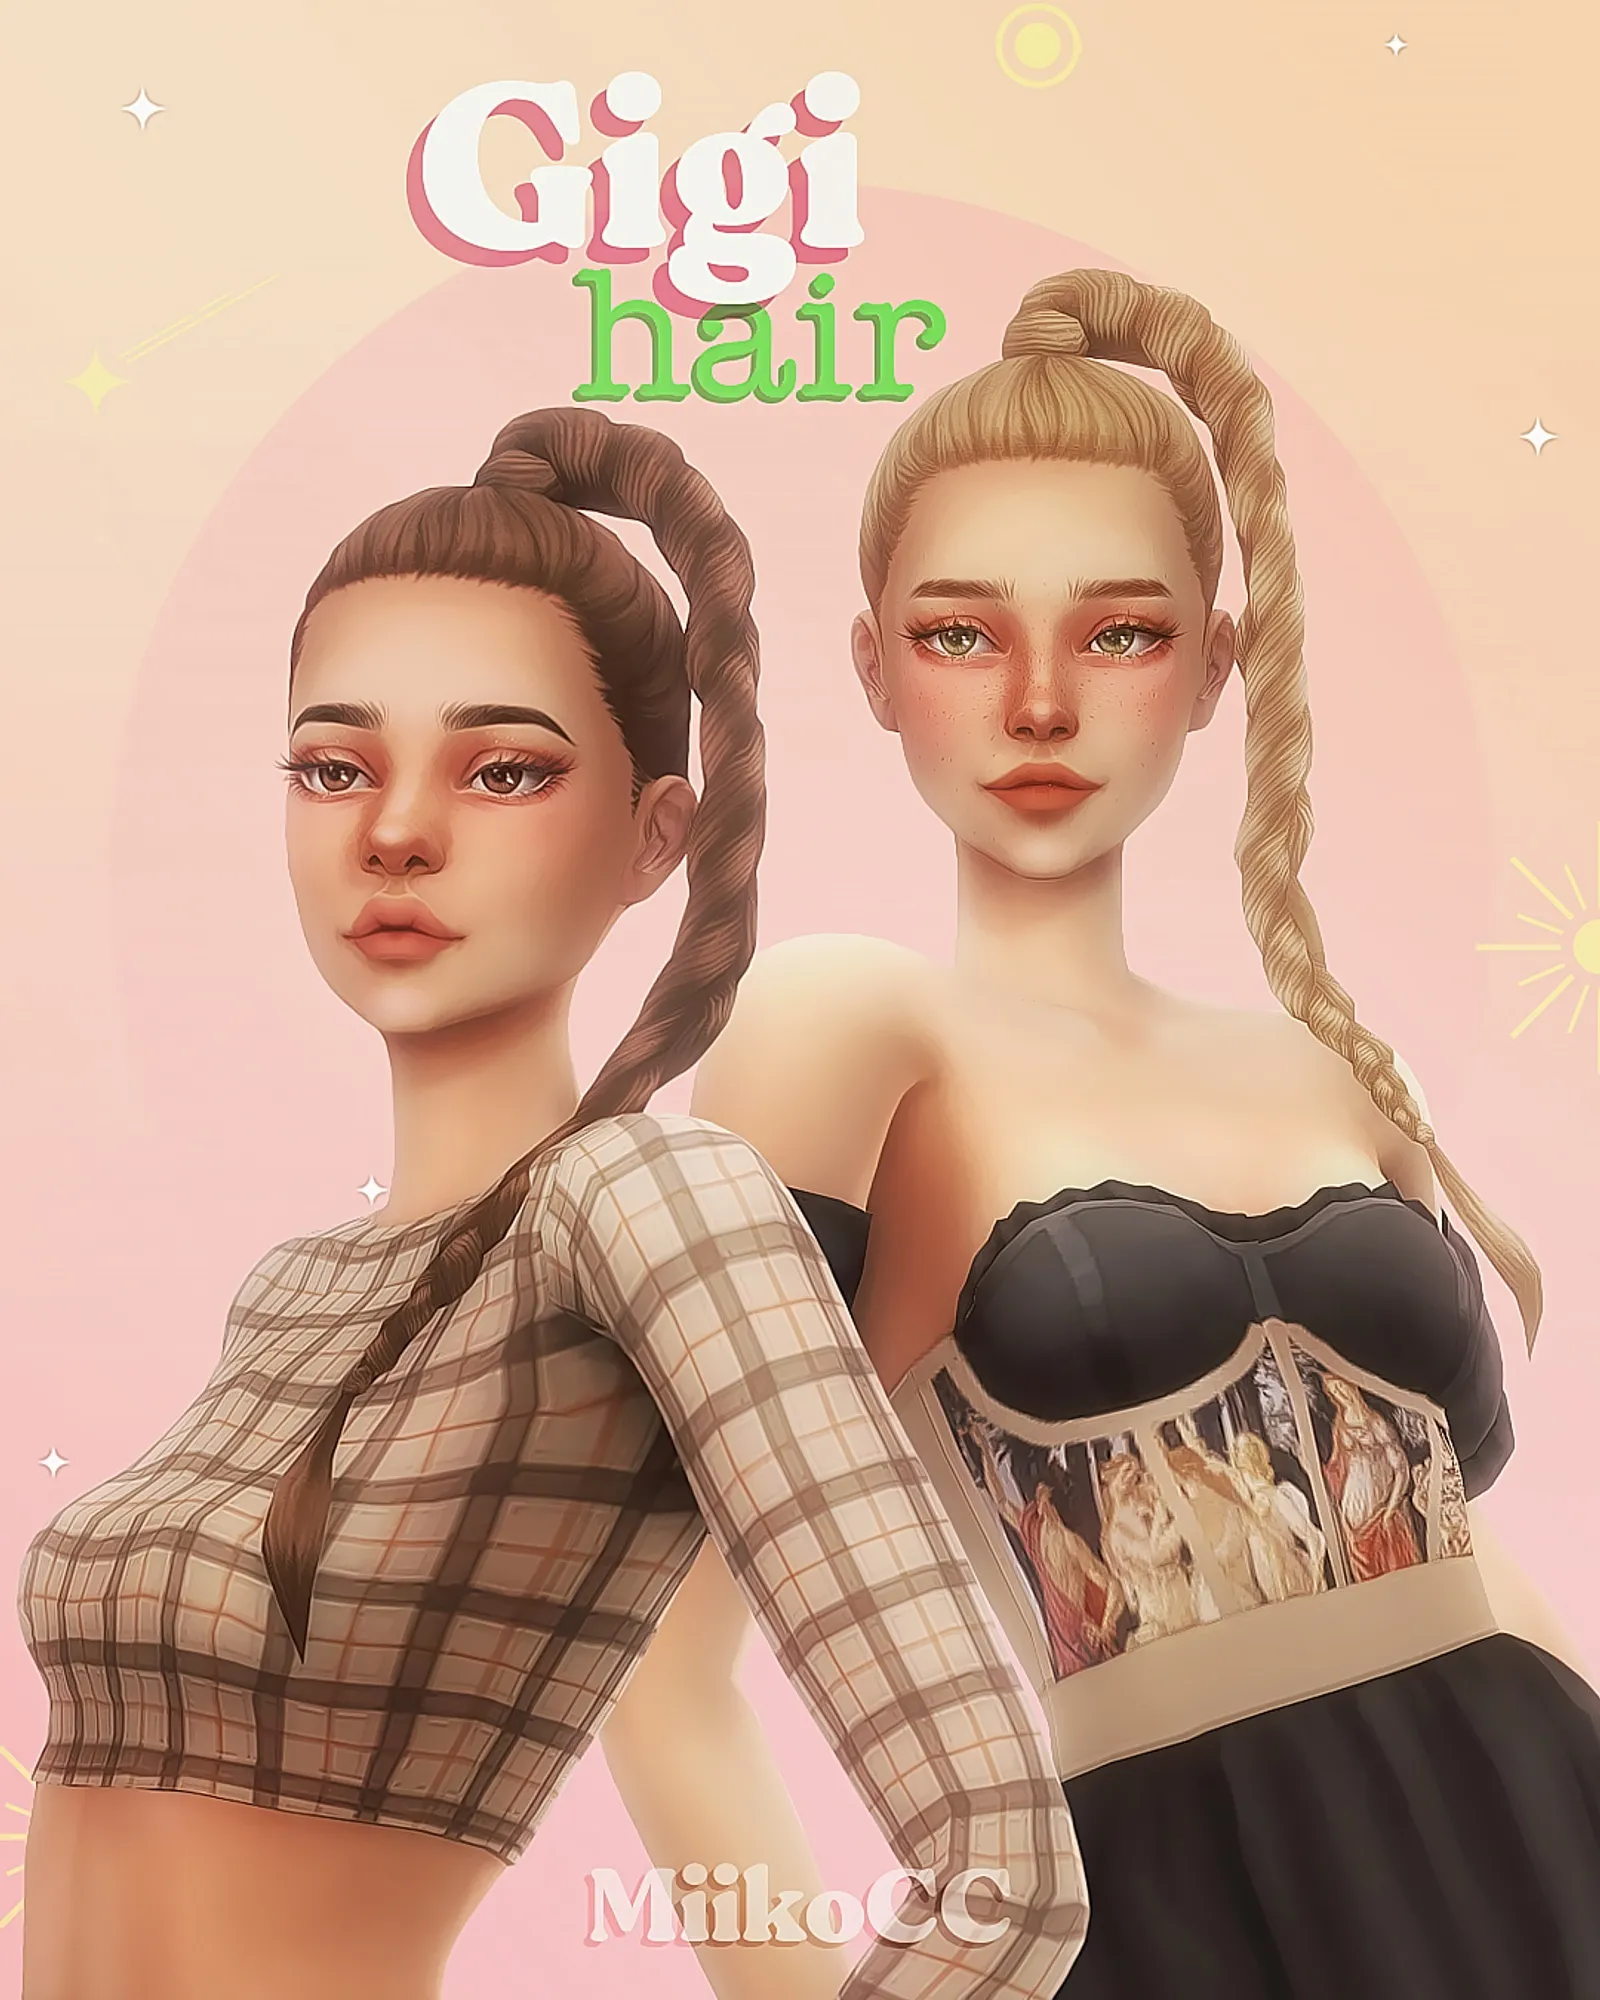 Gigi hair